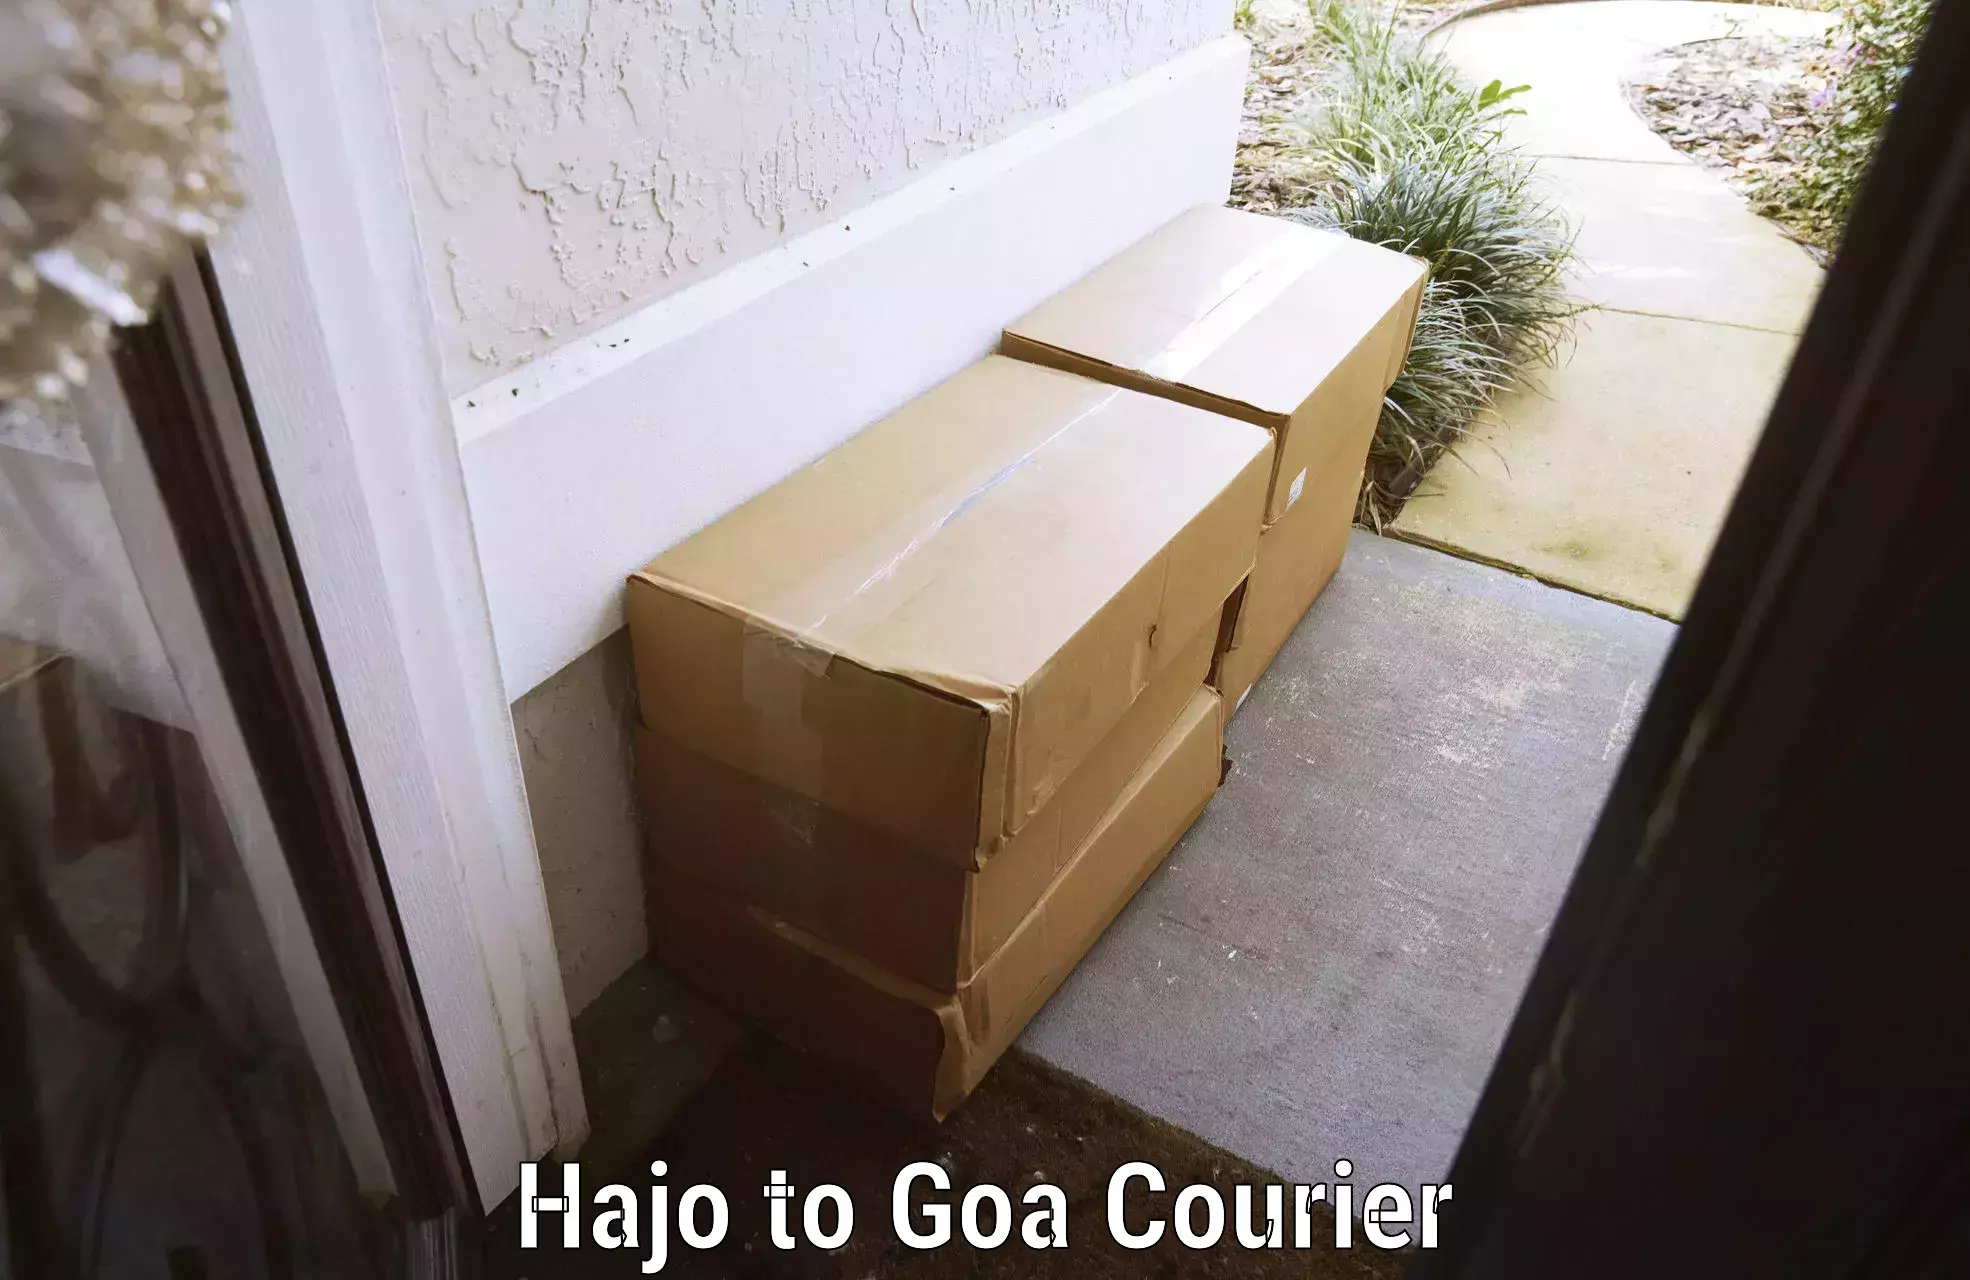 Same day luggage service Hajo to South Goa